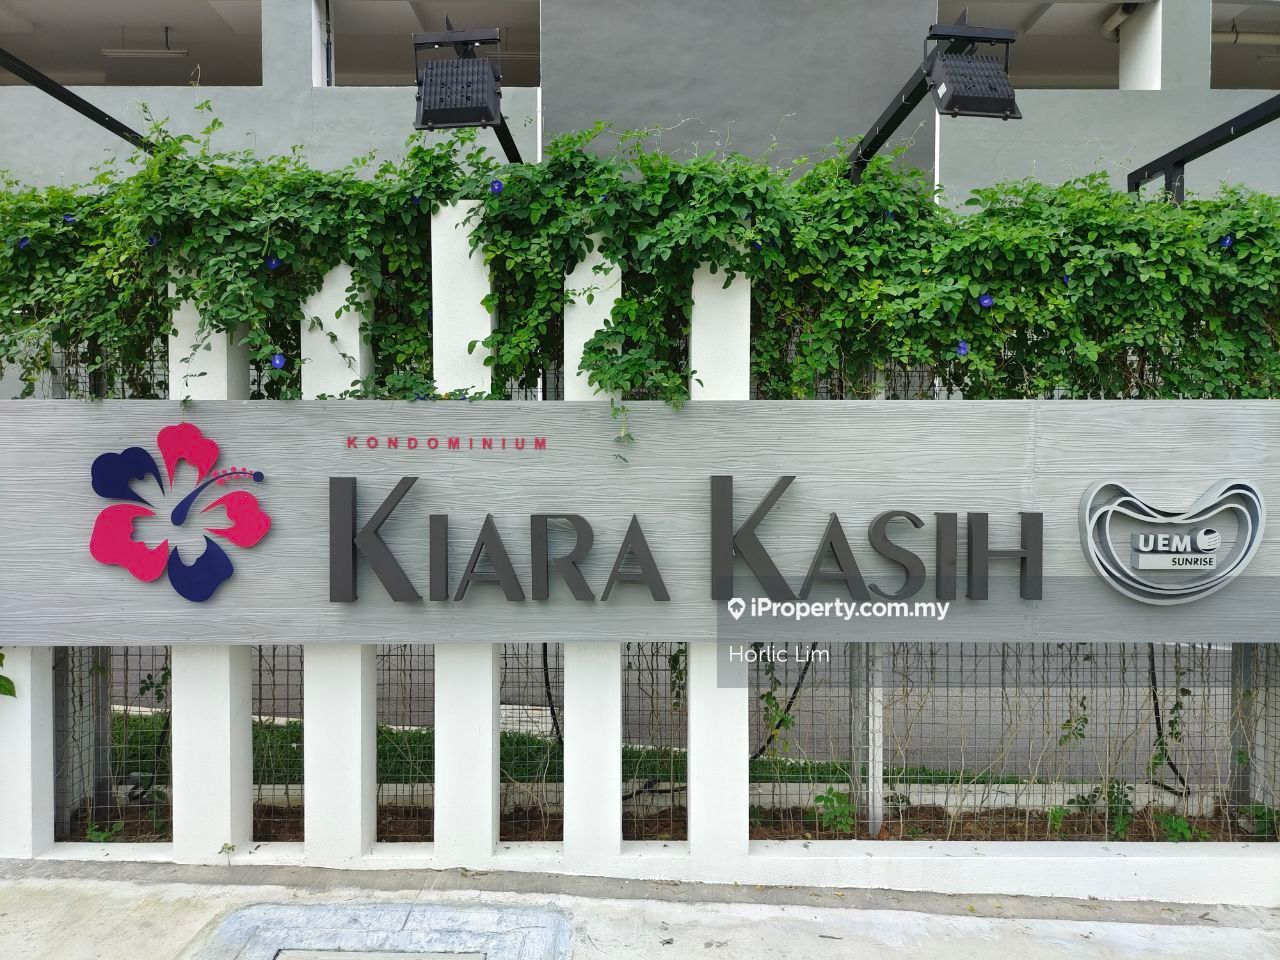 Kiara Kasih Condominium 3 bedrooms for rent in Mont Kiara, Kuala Lumpur